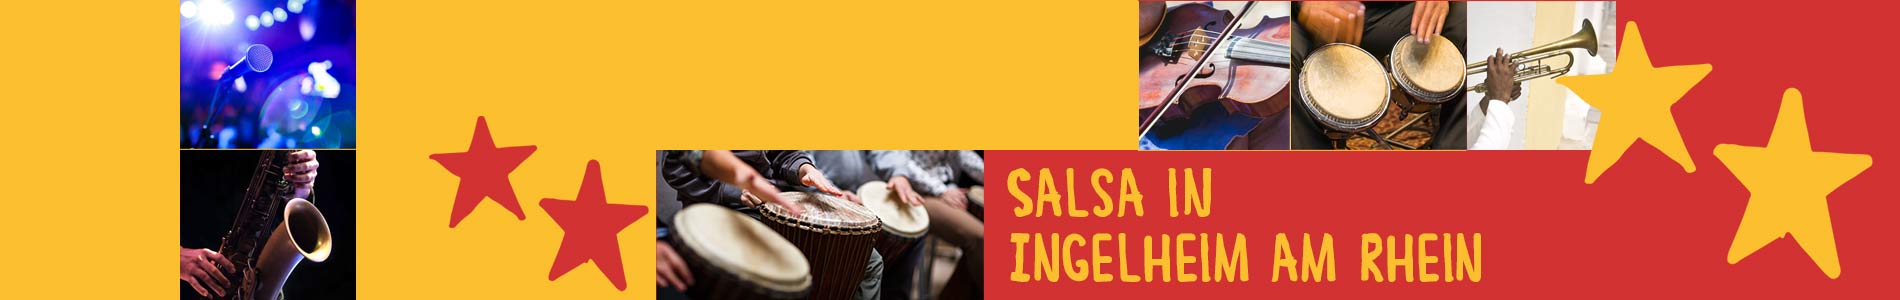 Salsa in Ingelheim am Rhein – Salsa lernen und tanzen, Tanzkurse, Partys, Veranstaltungen